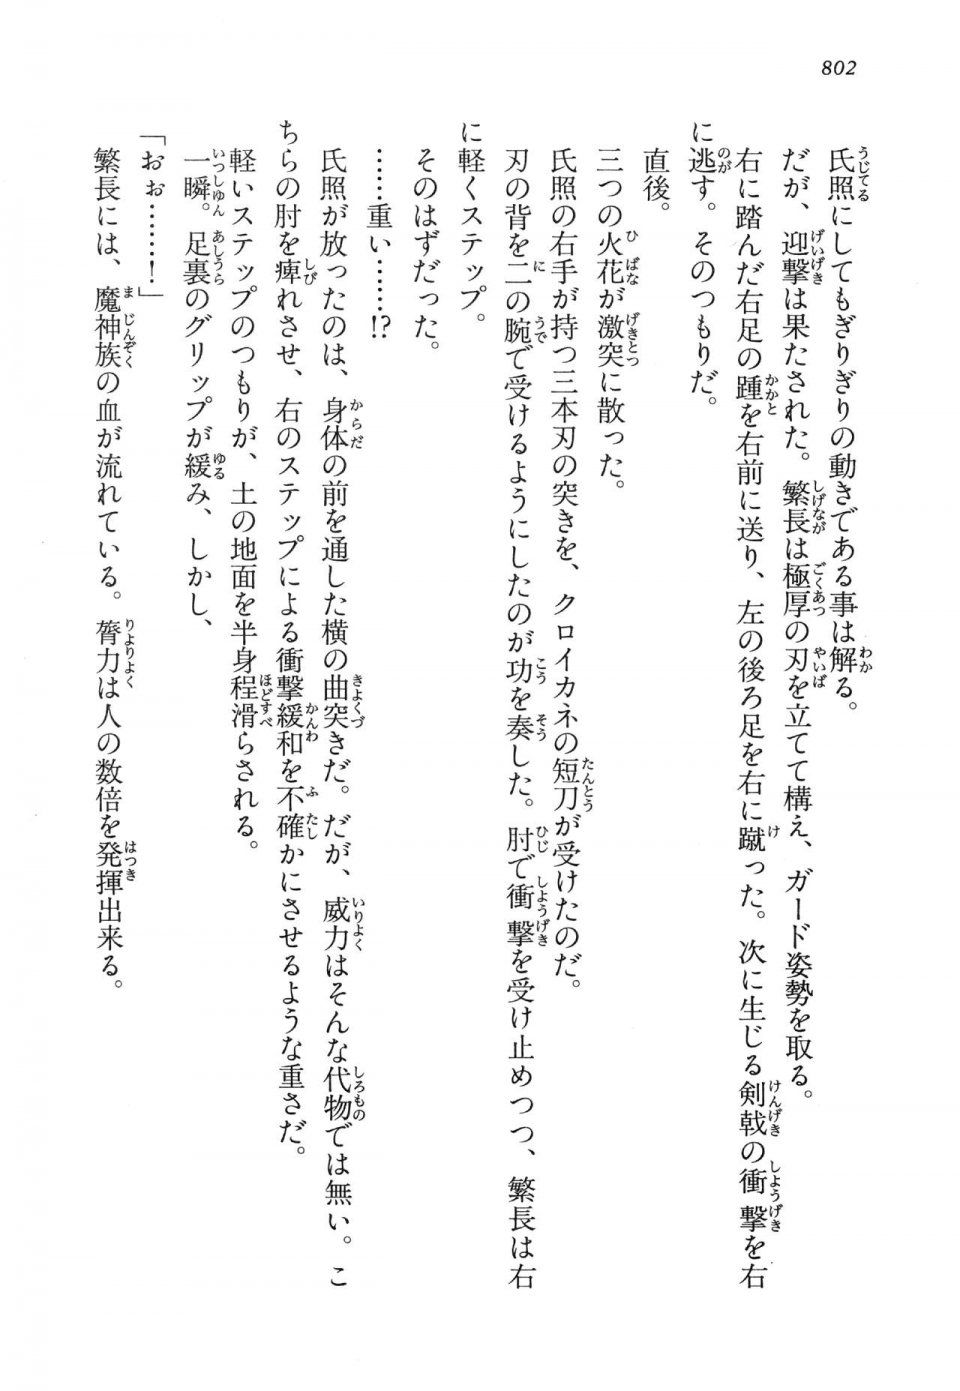 Kyoukai Senjou no Horizon LN Vol 14(6B) - Photo #802